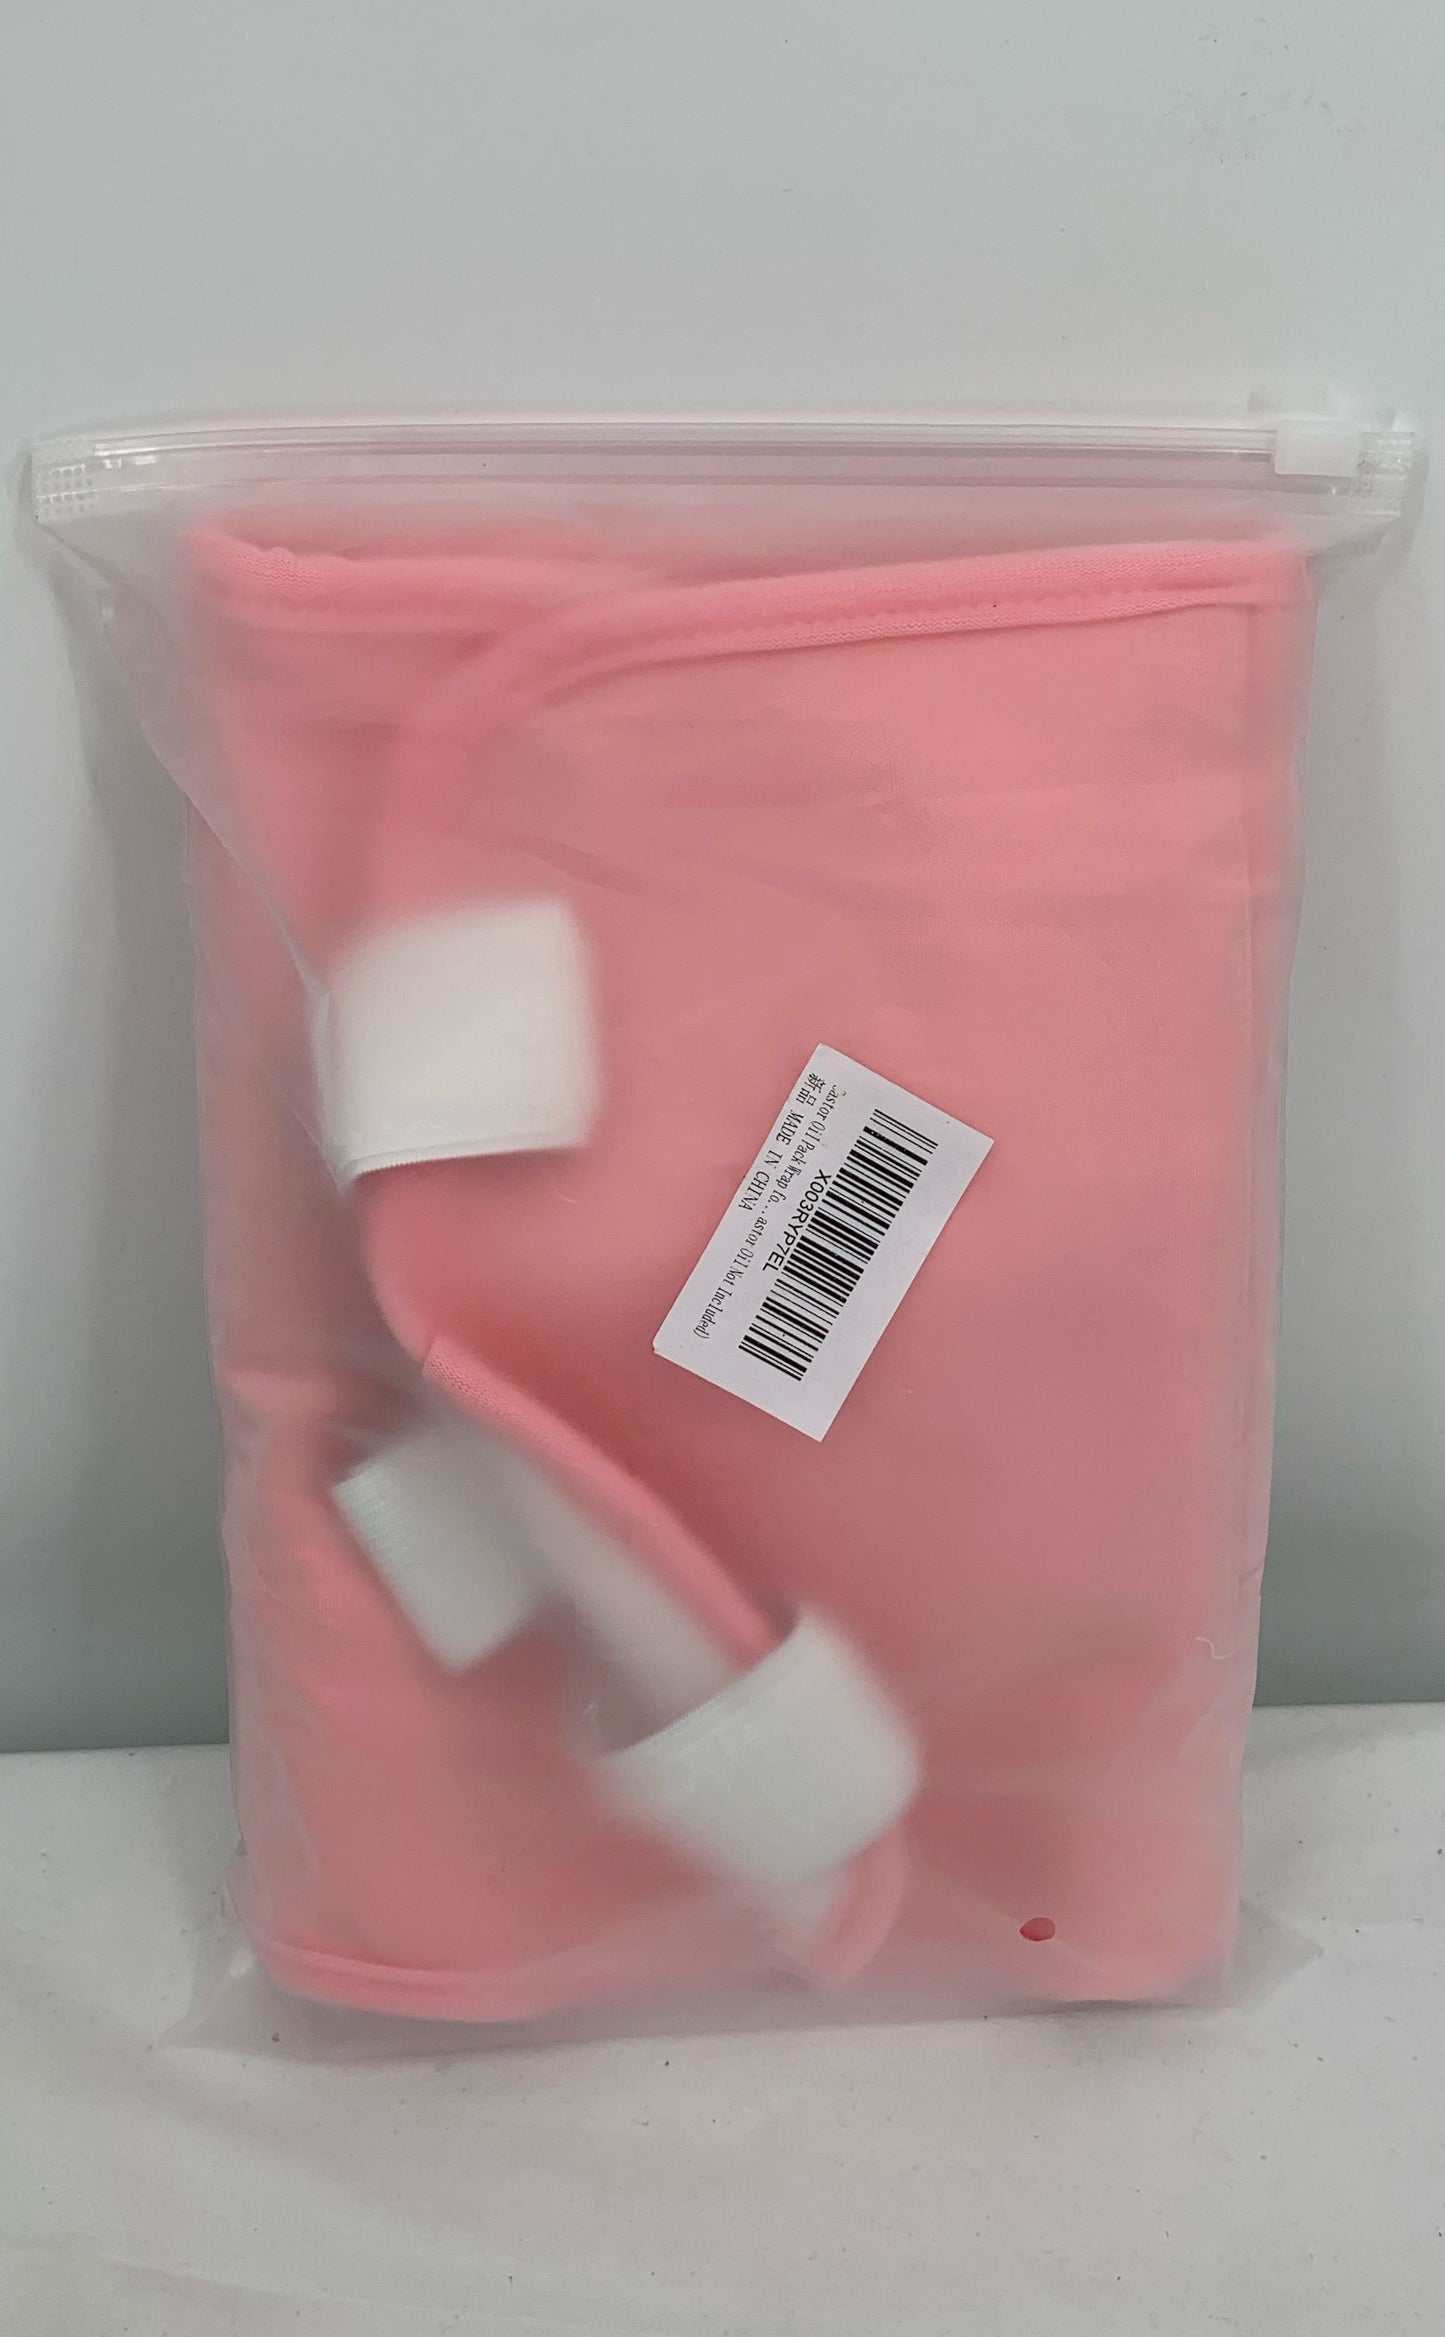 Castor Oil Pack Compress Kit-Reusable Wrap Detox-Adjustable Straps-Pink